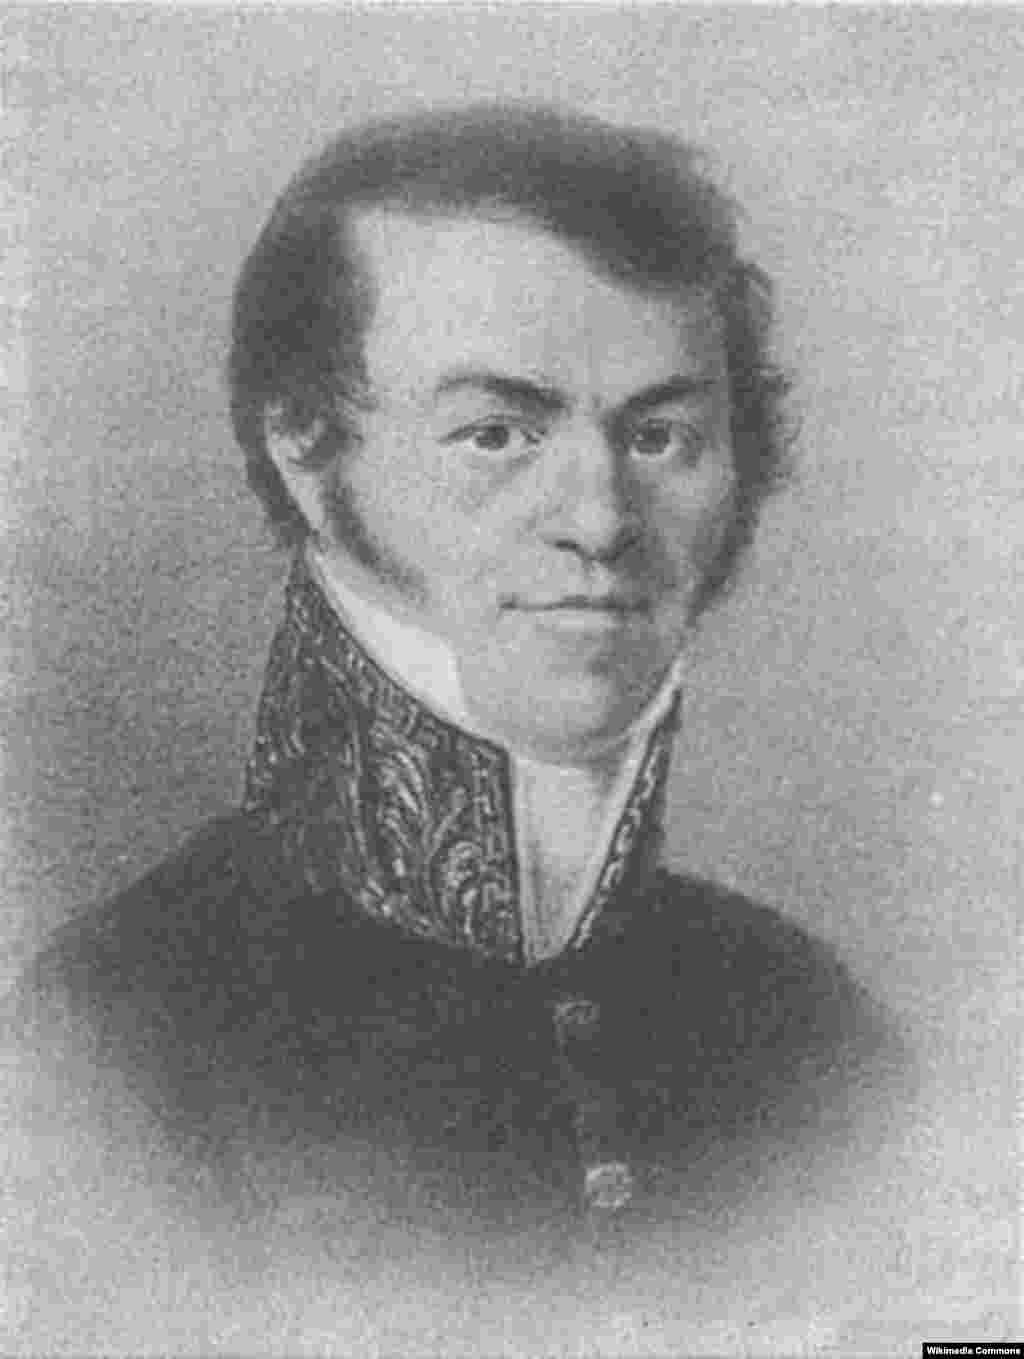 Tatăl lui Dostoievski își scria numele în ucraineană, Mihailo, înainte de războiul din 1812, în care a servit ca chirurg militar. După aceea s-a semnat, însă, Mihail, în rusește. Familia sa își are rădăcinile în regiunea Pinsk din Belarusul de astăzi. &nbsp;